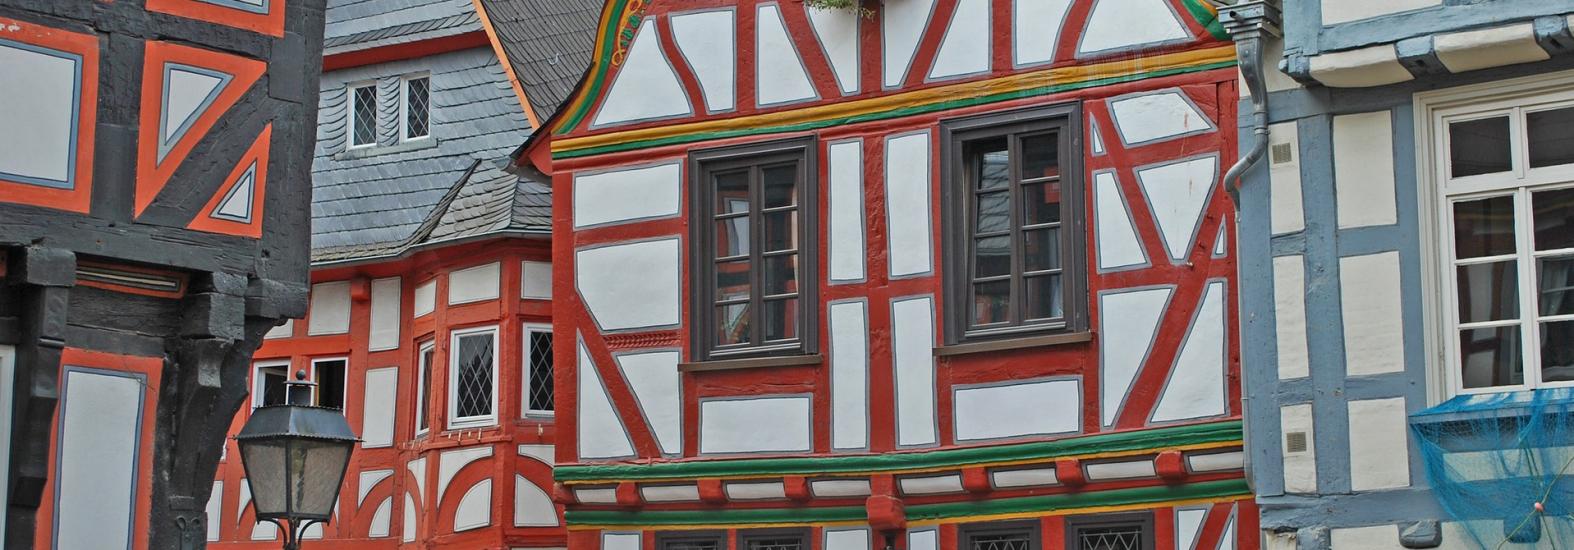 Fachwerkhaus-Fassade in Limburg, Deutschland